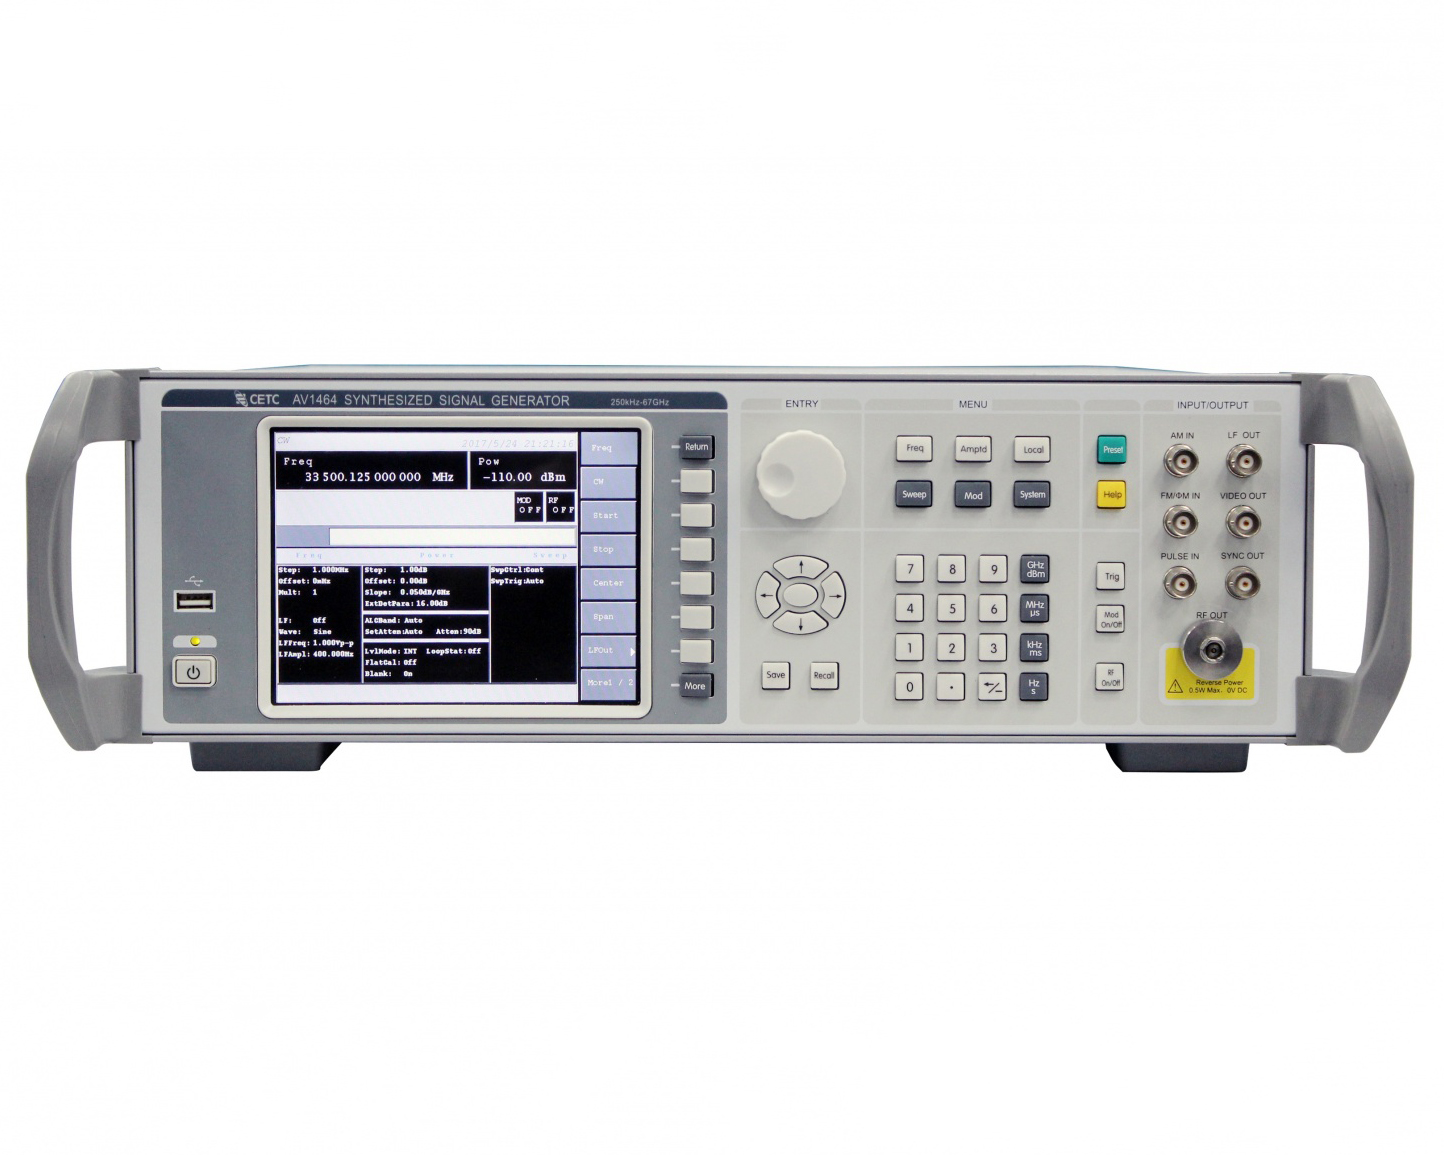 Генераторы сигналов <b>Ceyear серии AV1464:</b> AV1464/A/B/C с диапазоном от 250 кГц до 67 ГГц